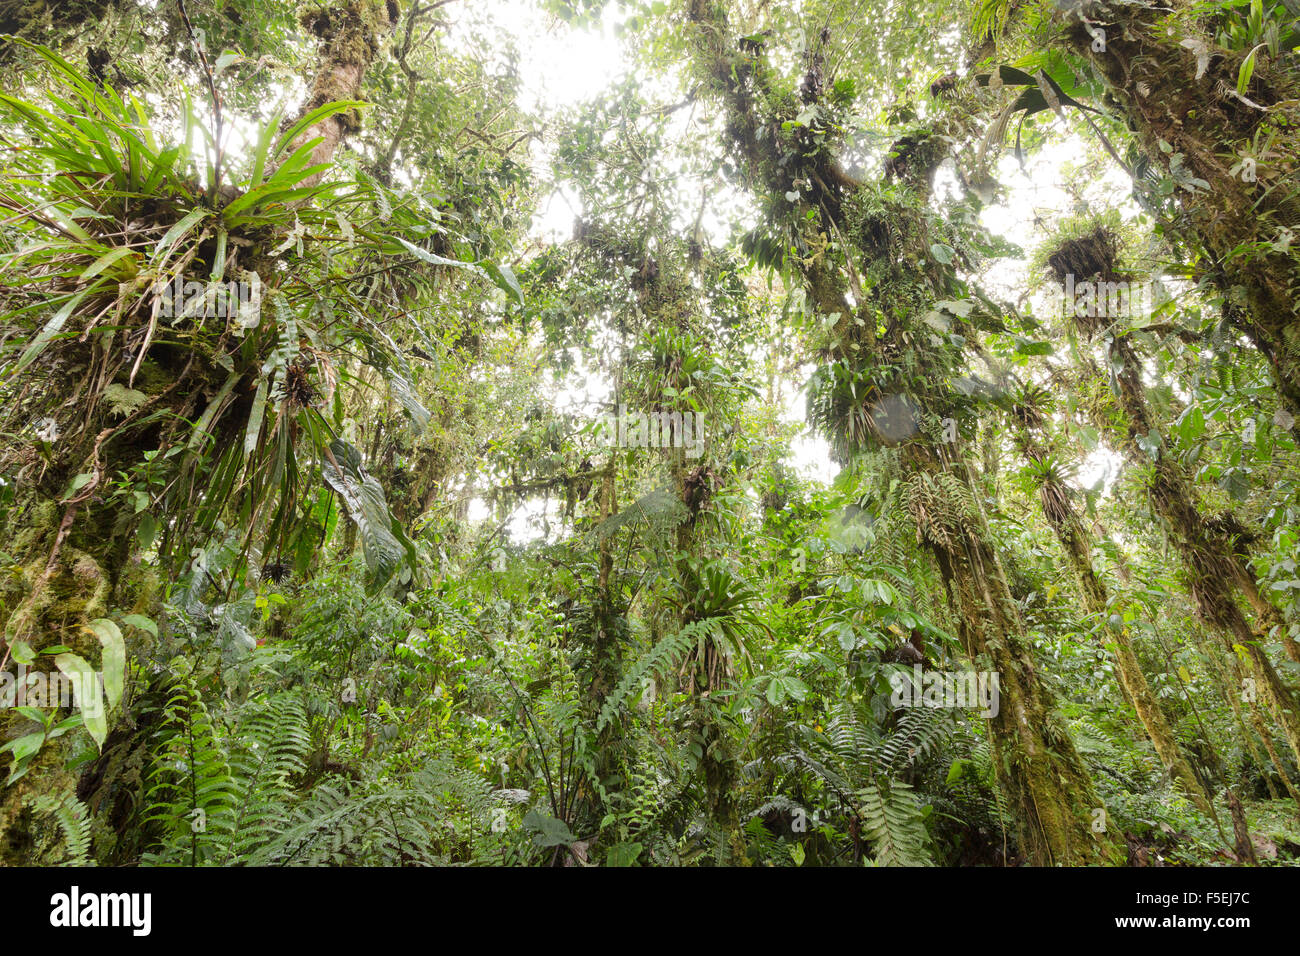 Dans les arbres chargés d'épiphytes cloudforest humide à 2 200 m d'altitude sur le versant amazonien de la Cordillère des Andes en Equateur Banque D'Images